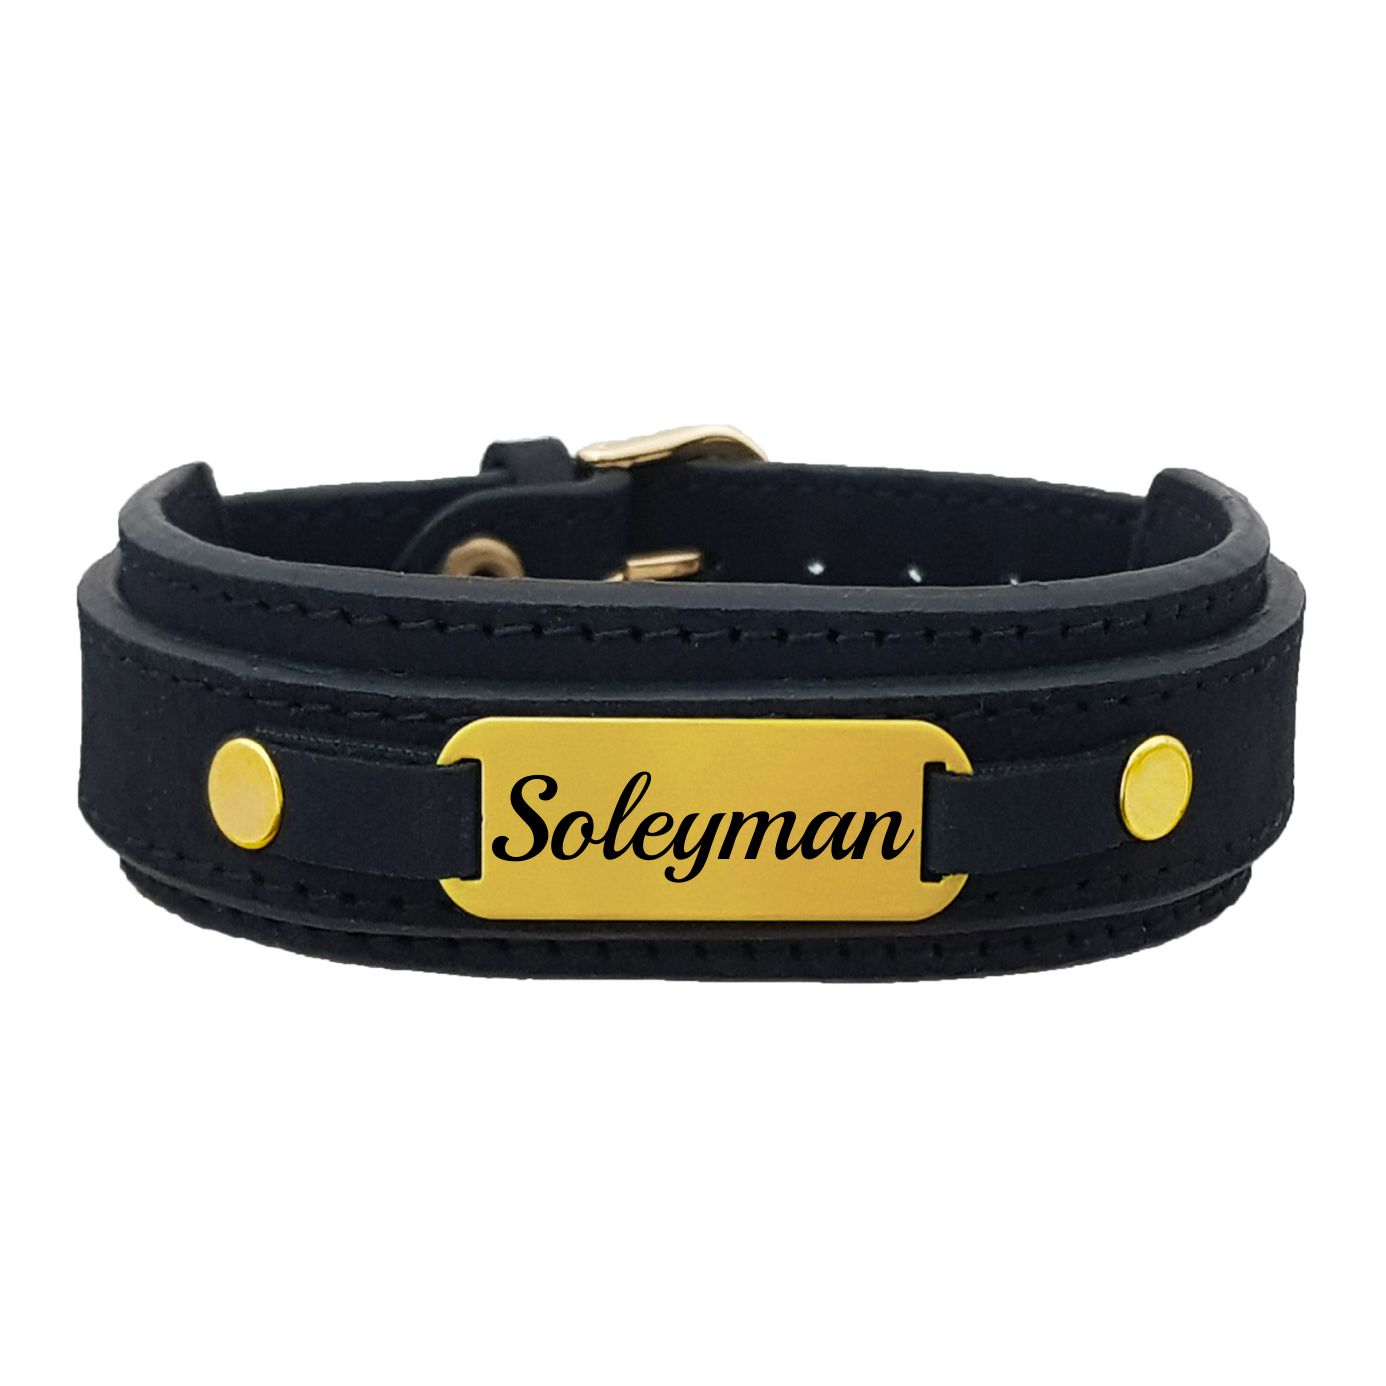 دستبند نقره مردانه لیردا مدل سلیمان کد 0221 DCHNT